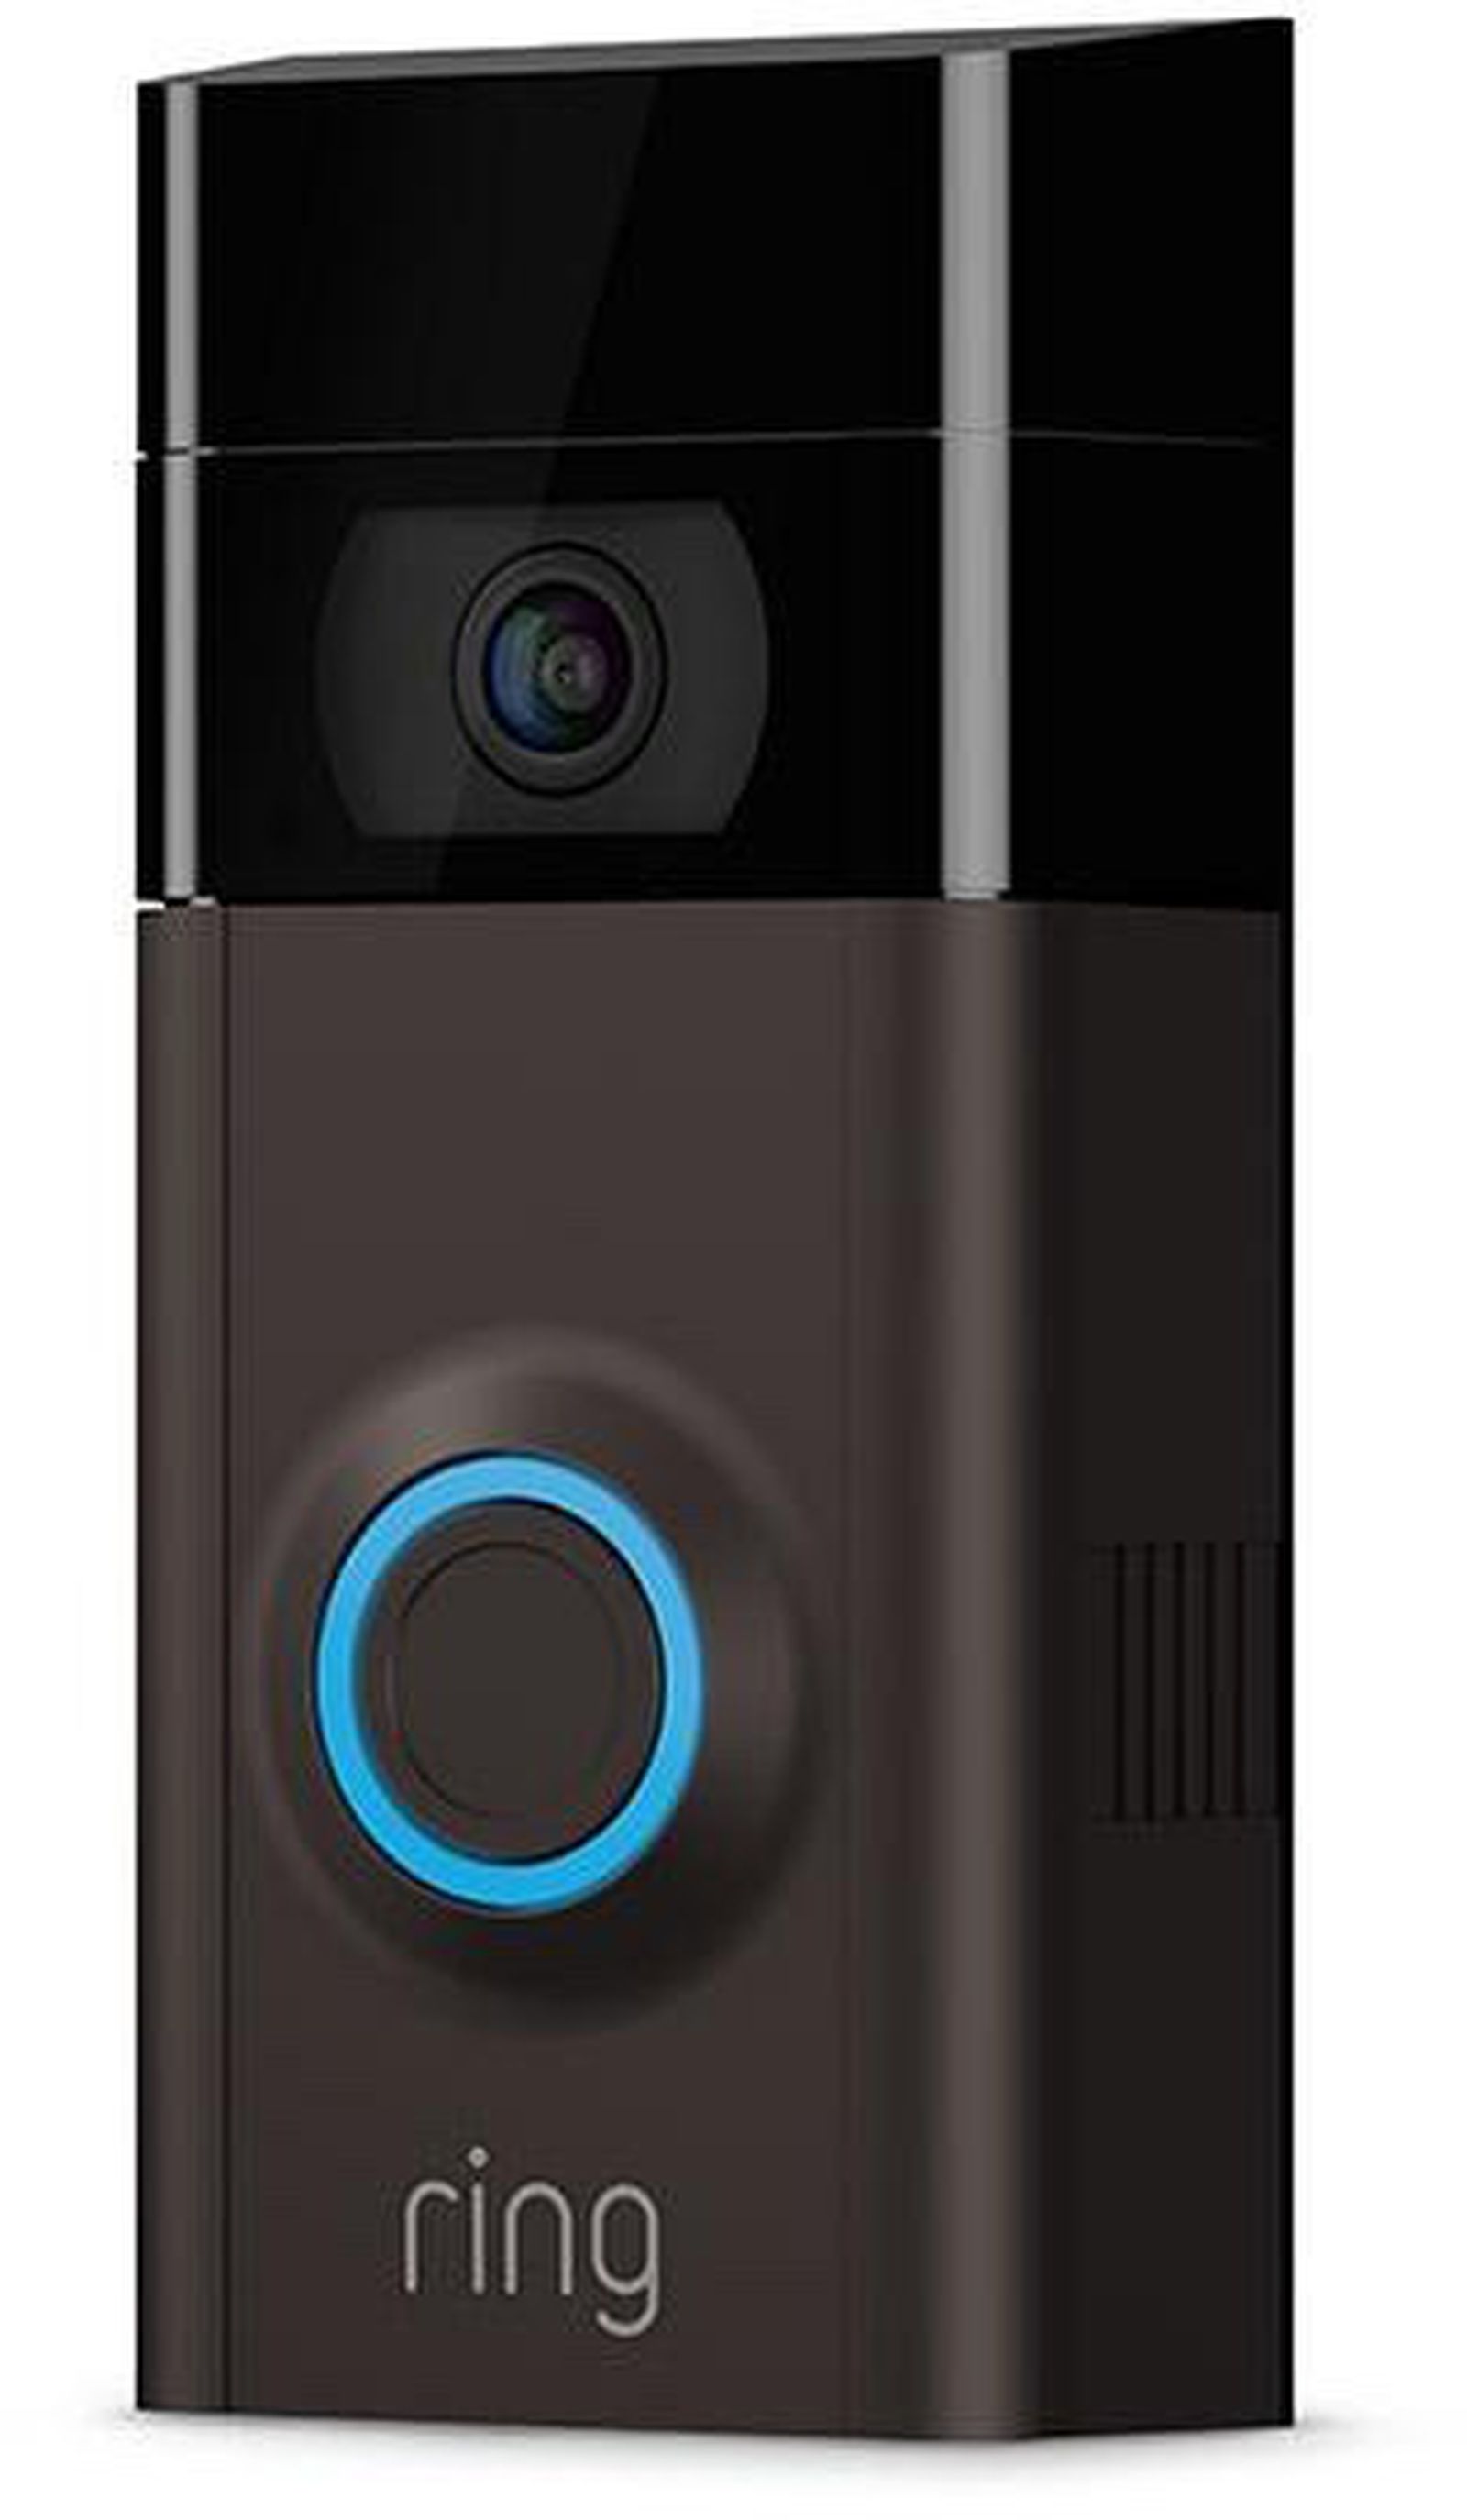 Amazon Acquiring Video Doorbell Maker Ring, but HomeKit Support is